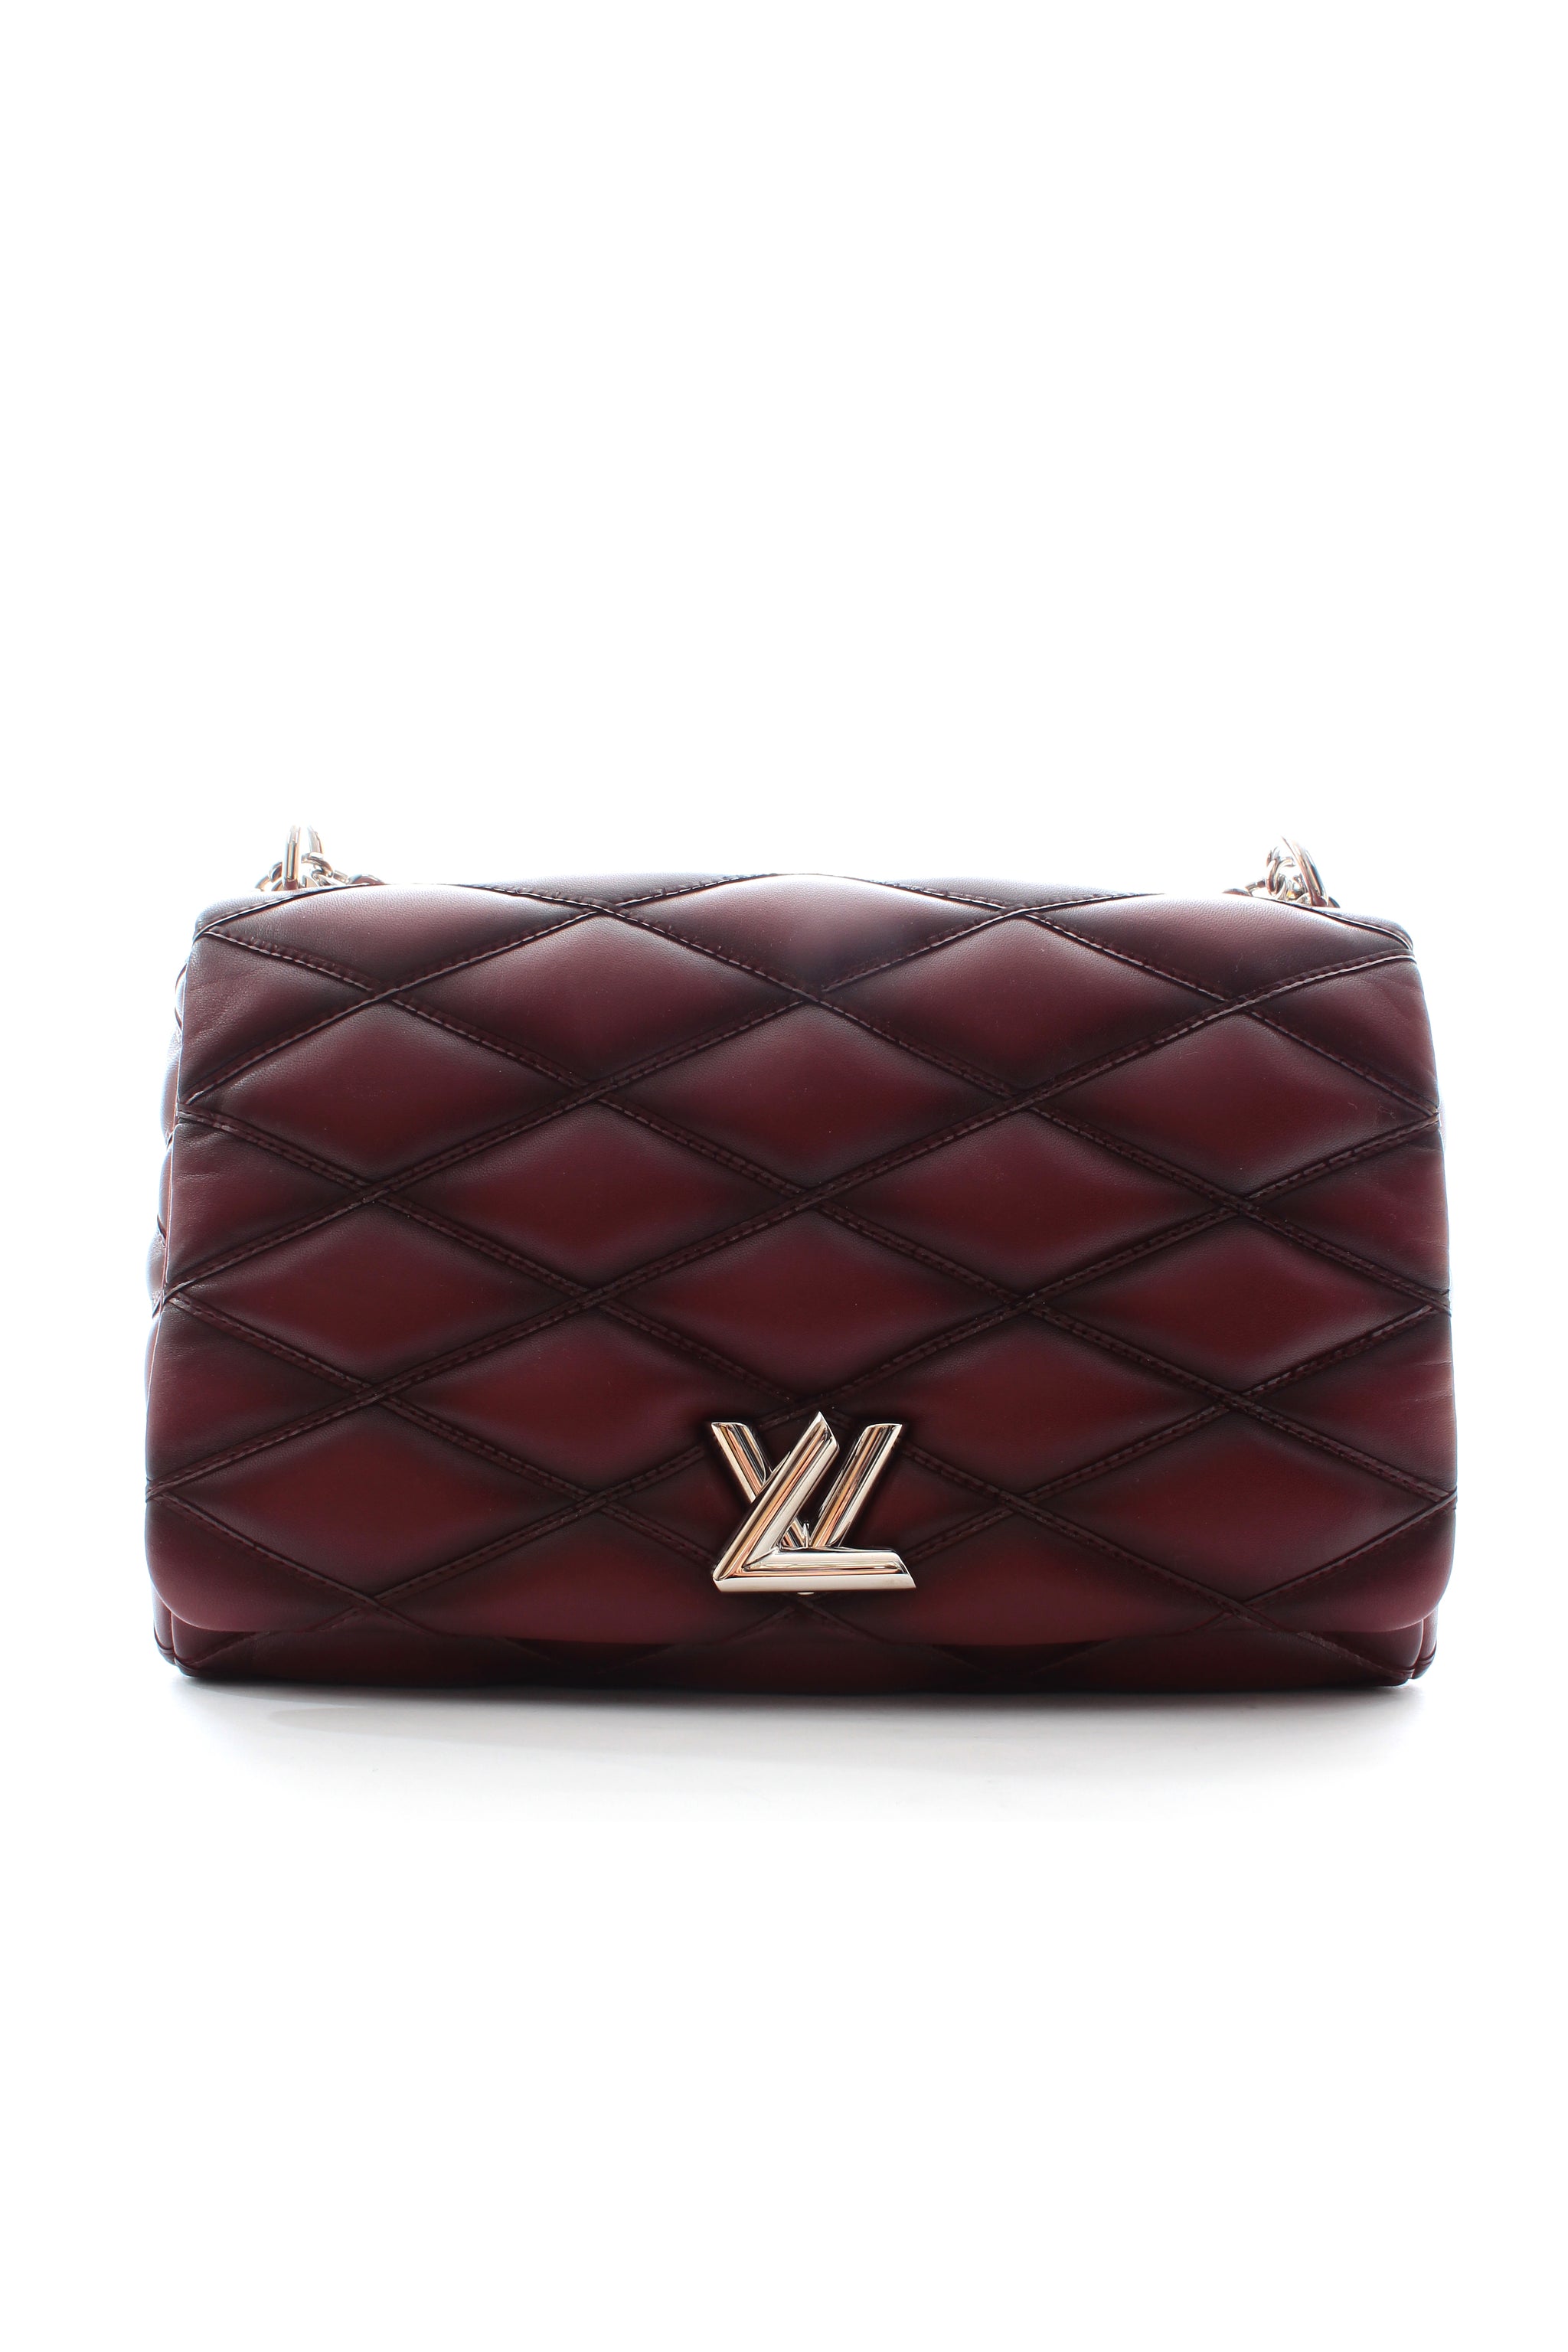 Louis Vuitton GO-14 Bag Collection